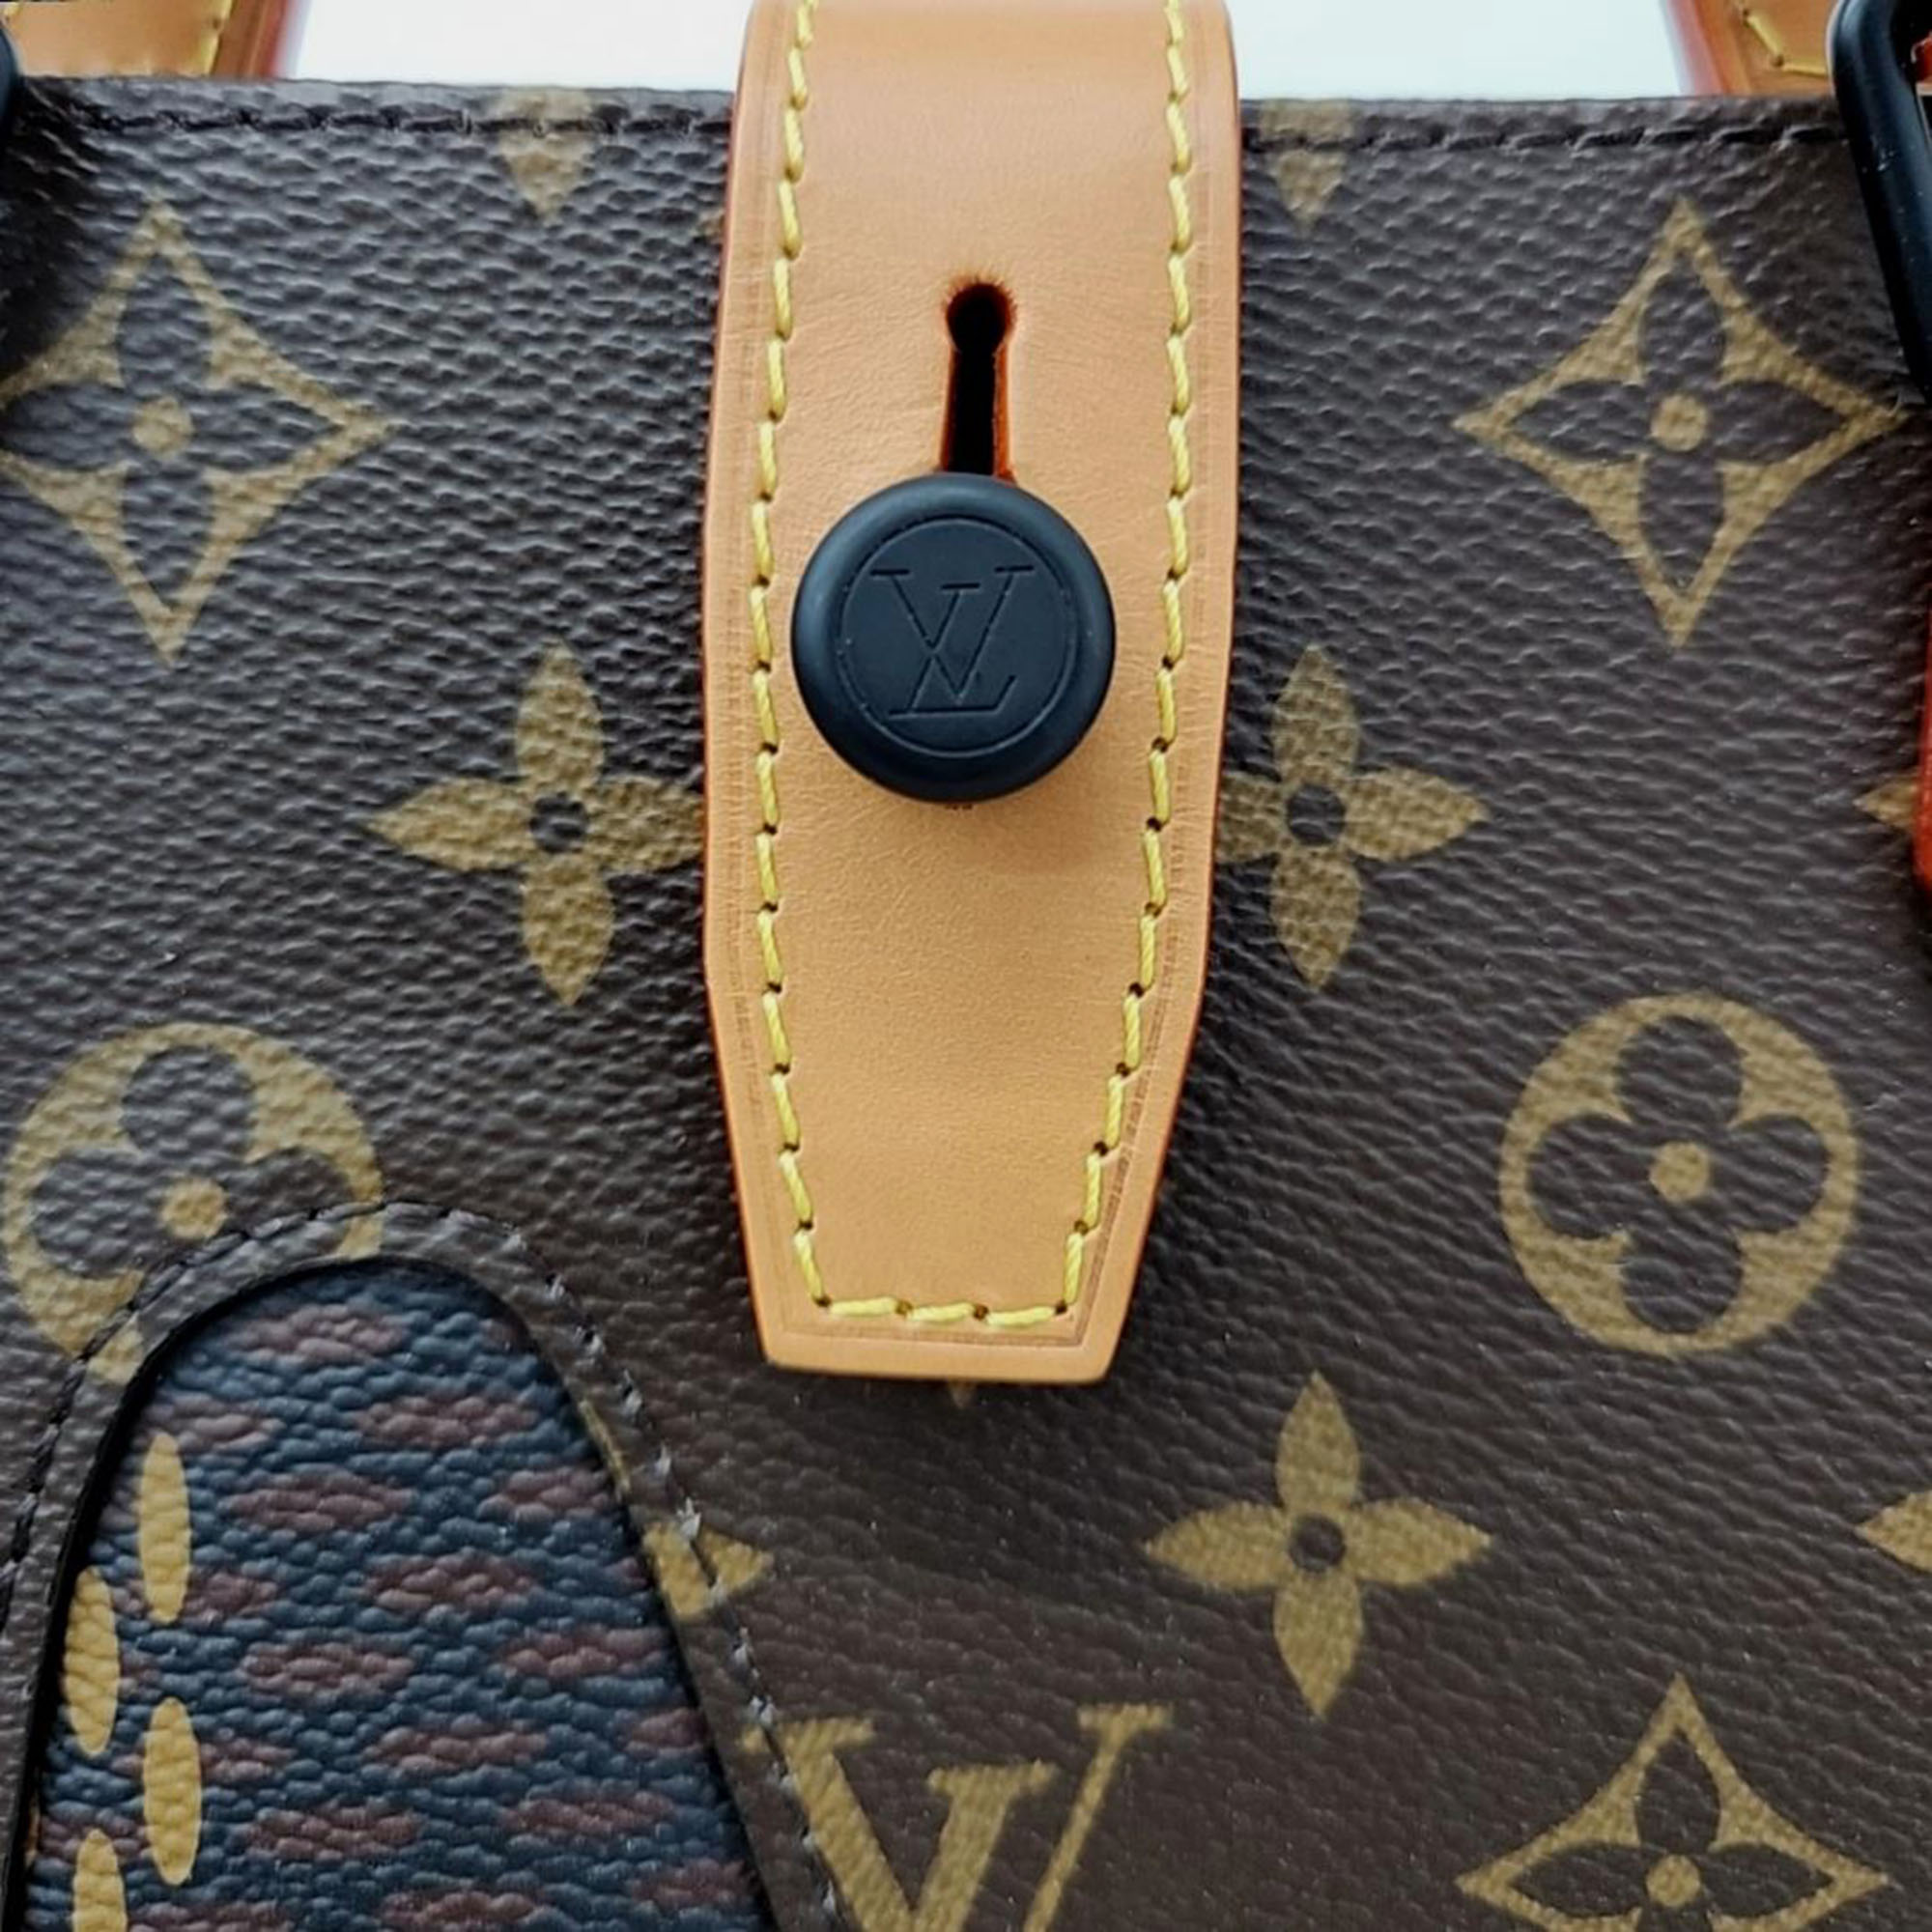 Louis Vuitton X Nigo Mini Tote Bag